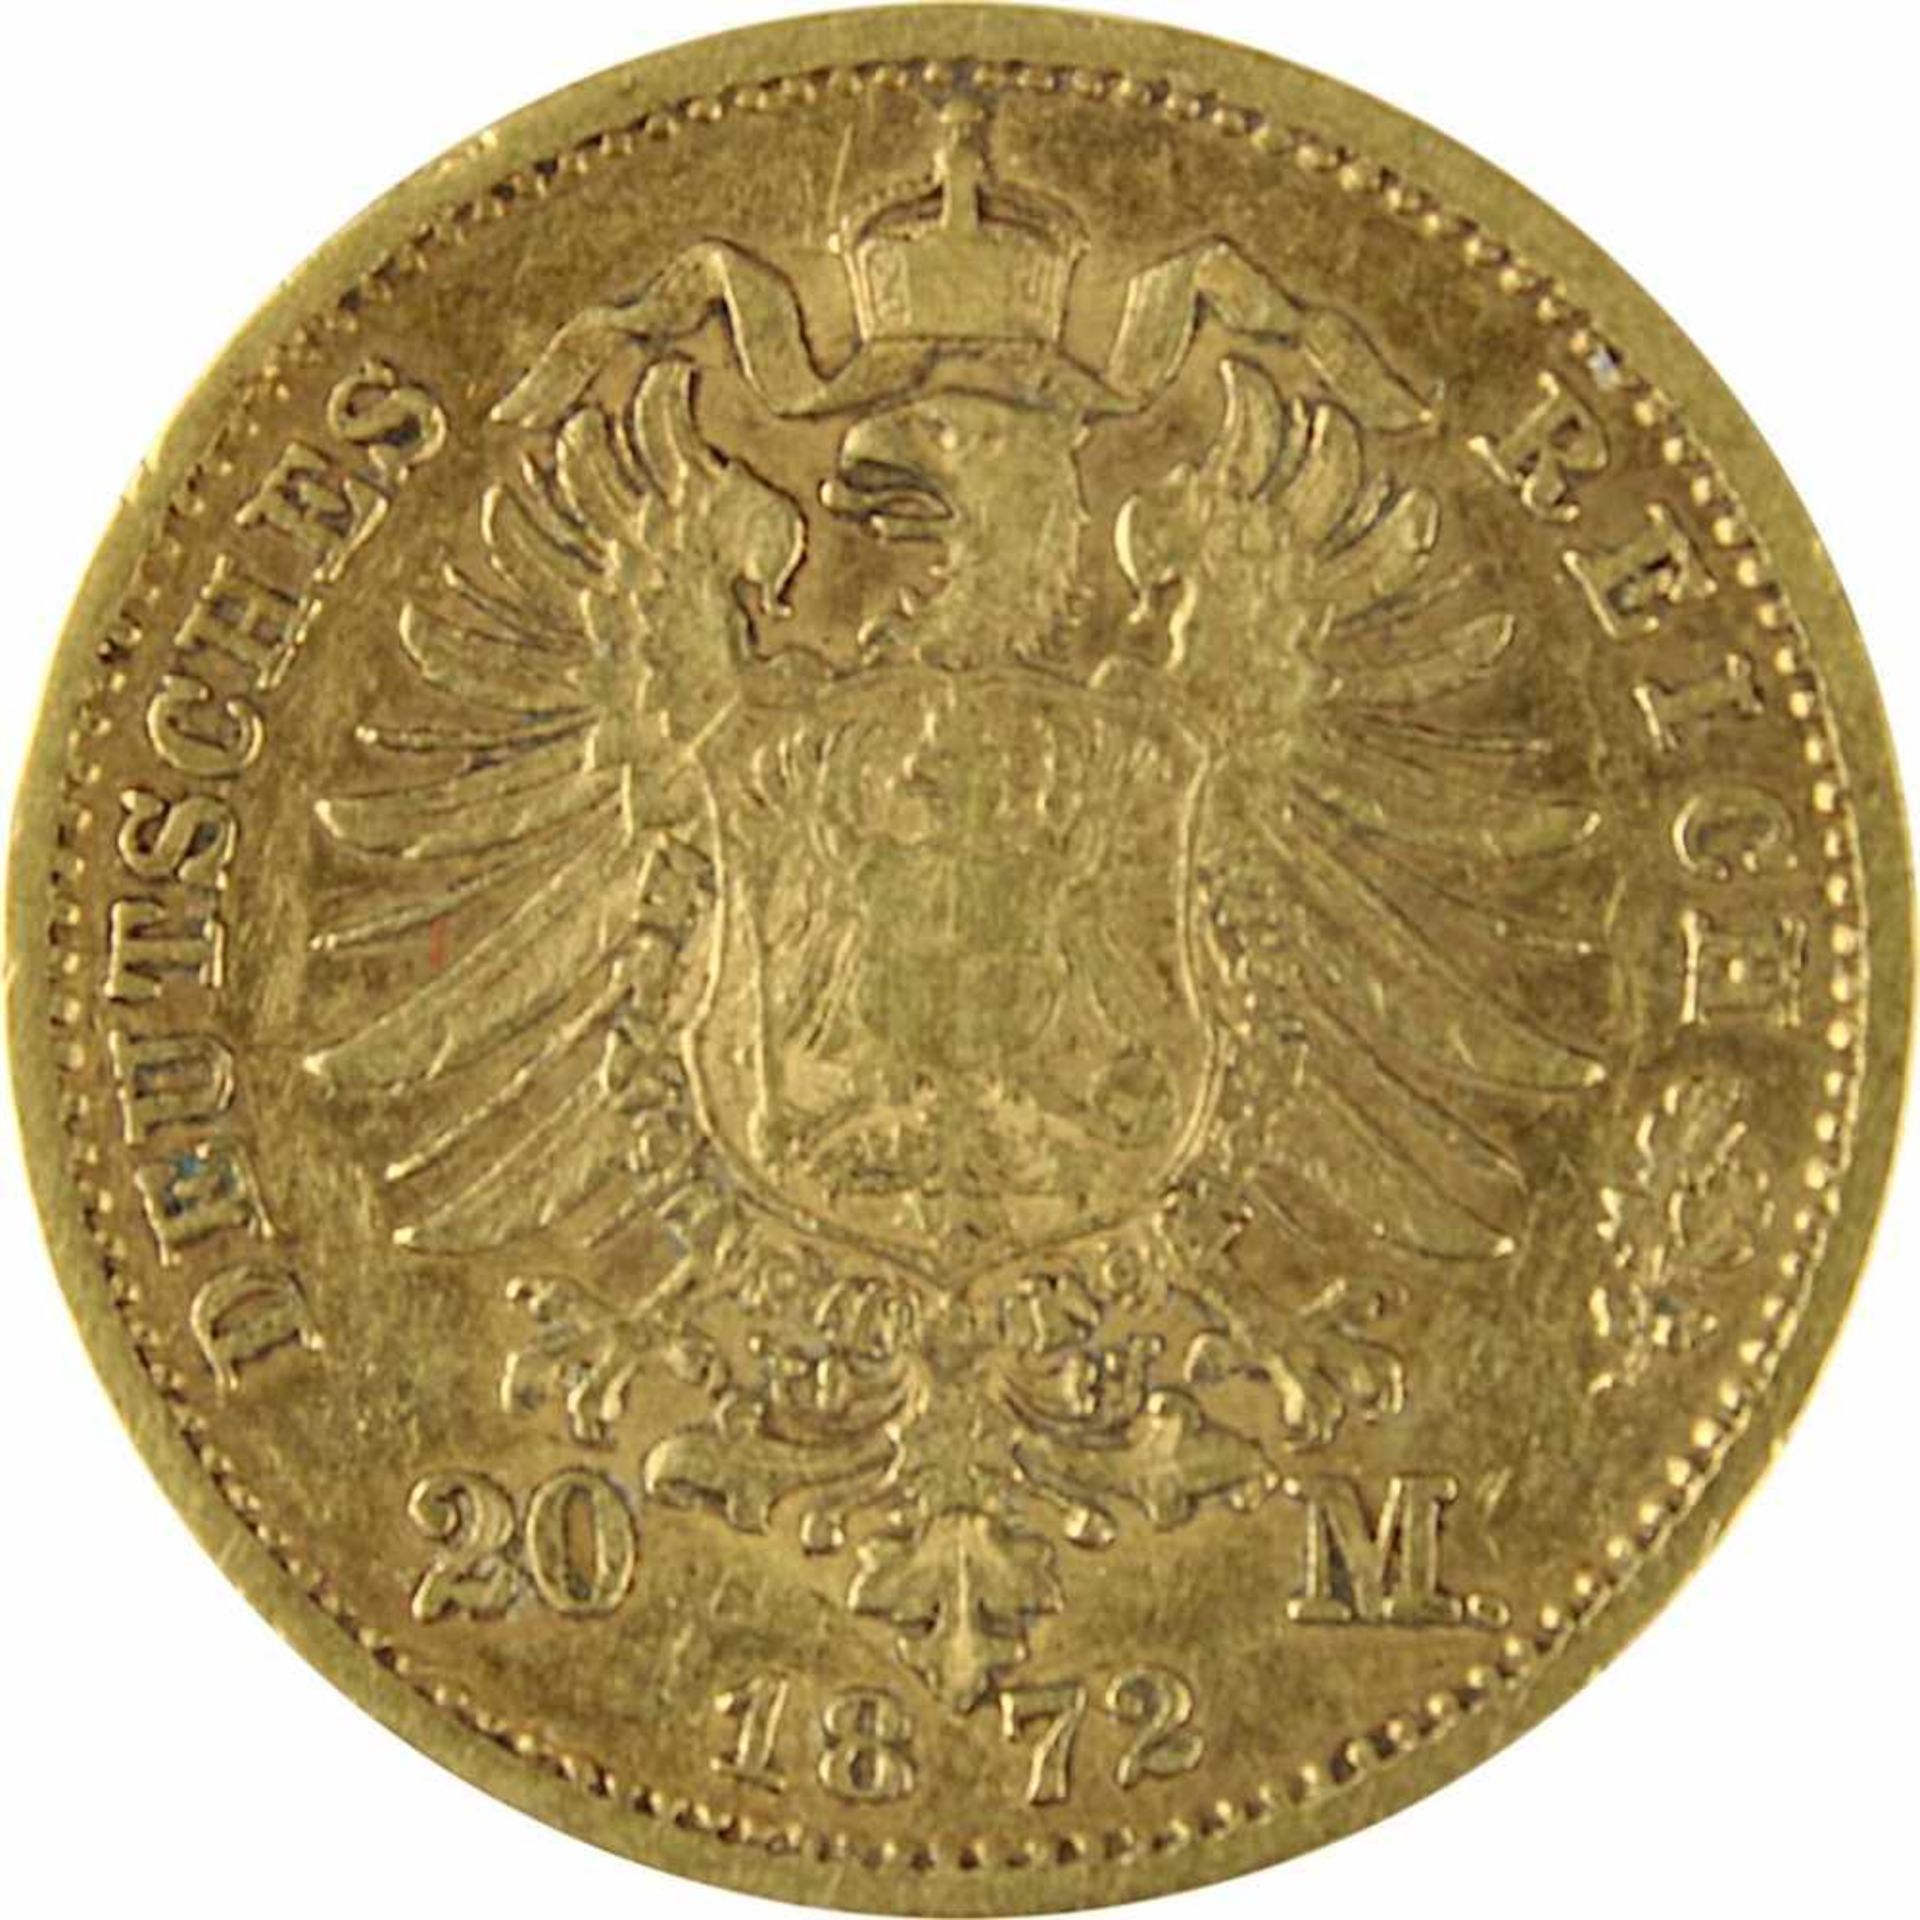 20 Mark Goldmünze Deutsches Reich, Sachsen 1872, 900er Gold, Av. Johann König v. Sachsen, Kopf n. - Bild 3 aus 3